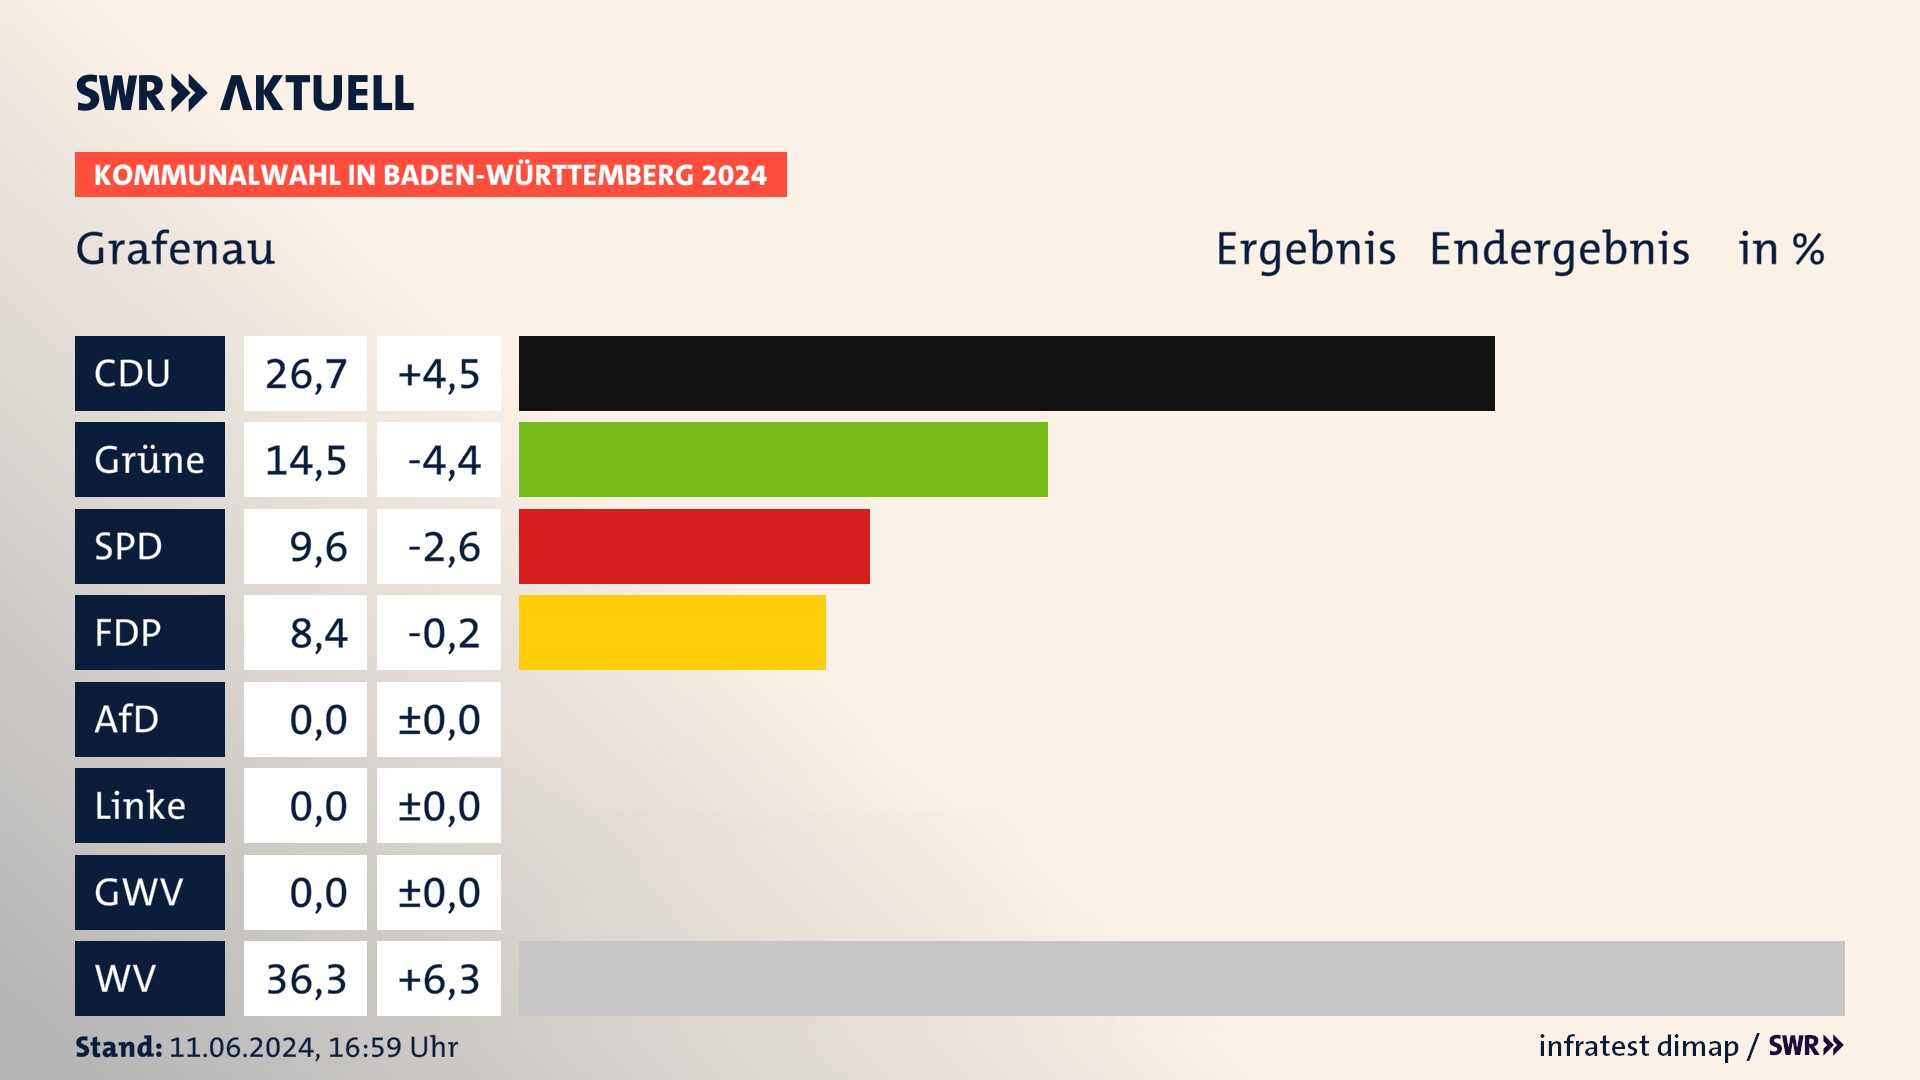 Kommunalwahl 2024 Endergebnis Zweitstimme für Grafenau. In Grafenau erzielt die CDU 26,7 Prozent der gültigen  Stimmen. Die Grünen landen bei 14,5 Prozent. Die SPD erreicht 9,6 Prozent. Die FDP kommt auf 8,4 Prozent. Die Wählervereinigungen landen bei 36,3 Prozent.